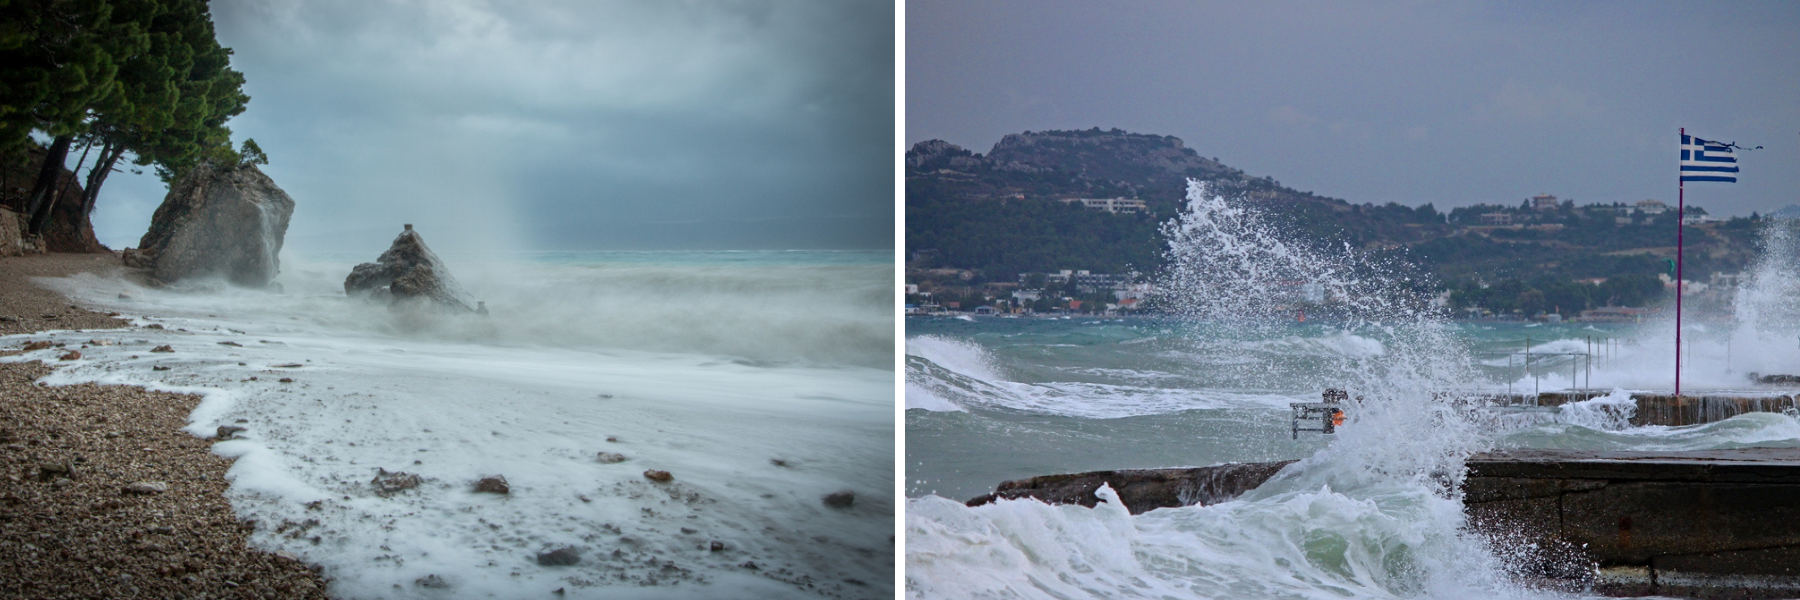 Στην Κροατία και την Ελλάδα, μπορεί να συναντήσετε δυσάρεστους ανέμους και δυσάρεστες καιρικές συνθήκες.